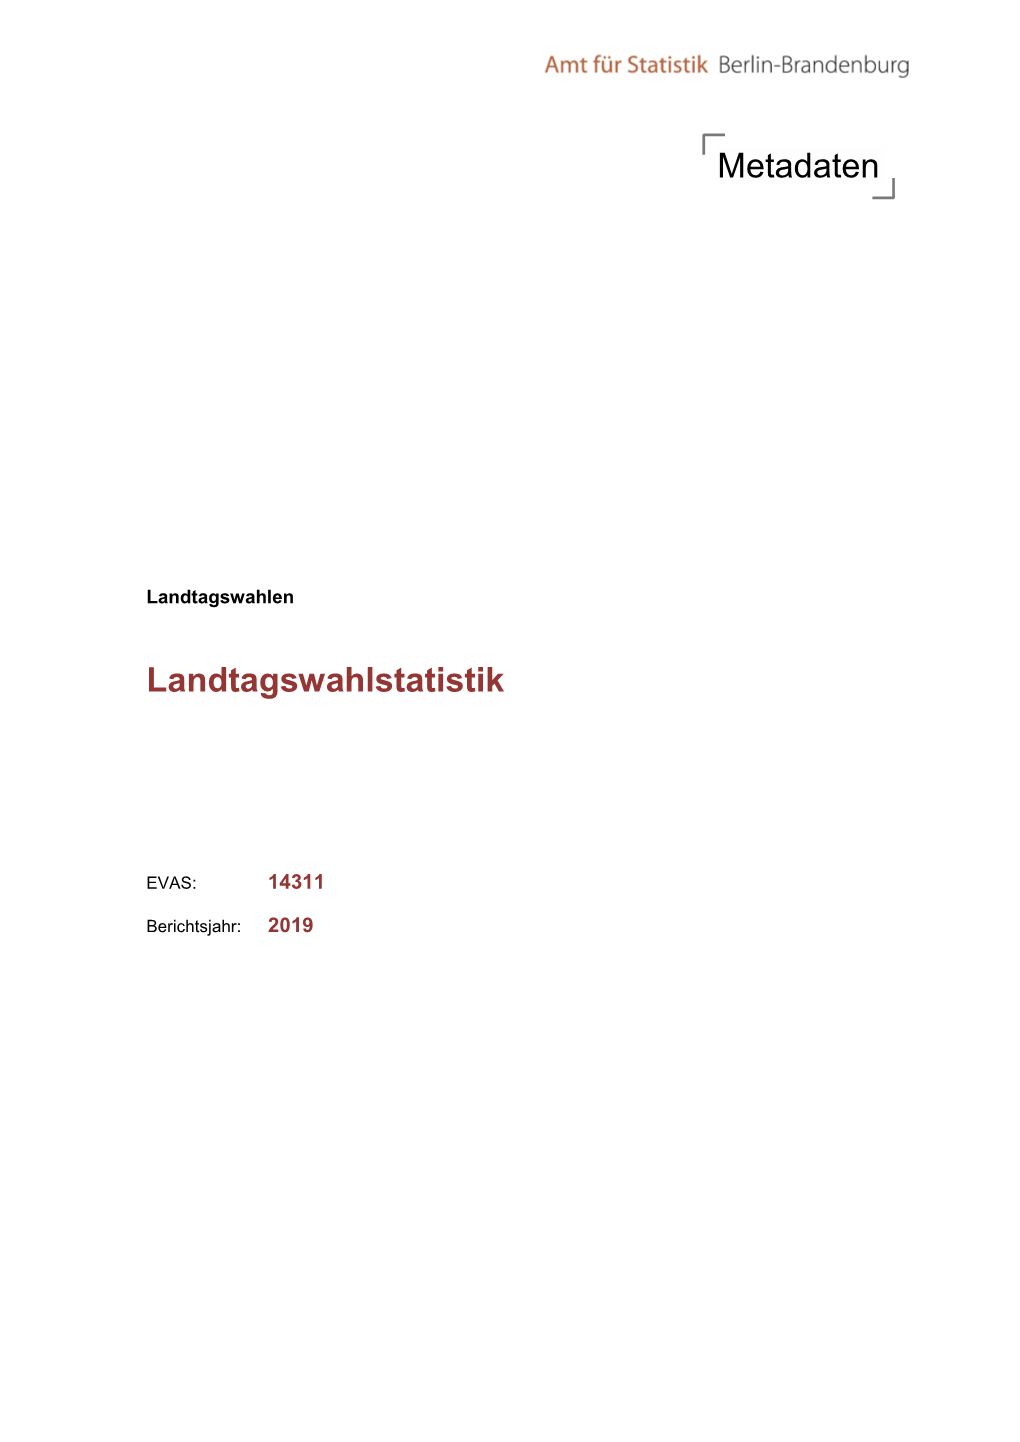 Metadaten Landtagswahlstatistik EVAS: 14311 Berichtsjahr: 2019